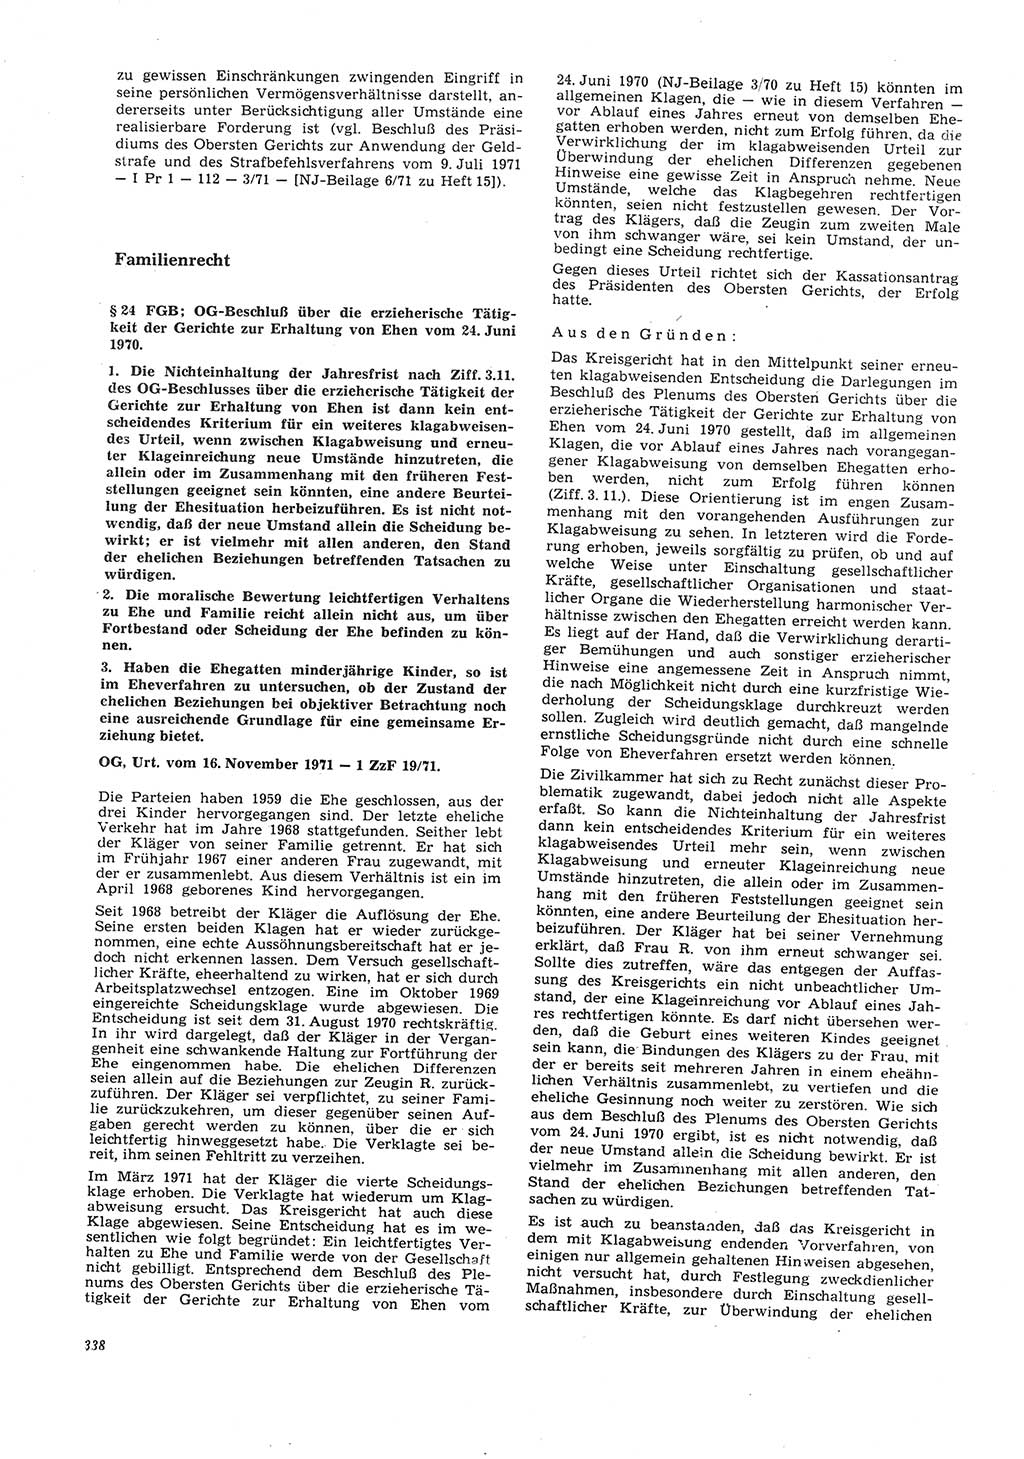 Neue Justiz (NJ), Zeitschrift für Recht und Rechtswissenschaft [Deutsche Demokratische Republik (DDR)], 26. Jahrgang 1972, Seite 338 (NJ DDR 1972, S. 338)